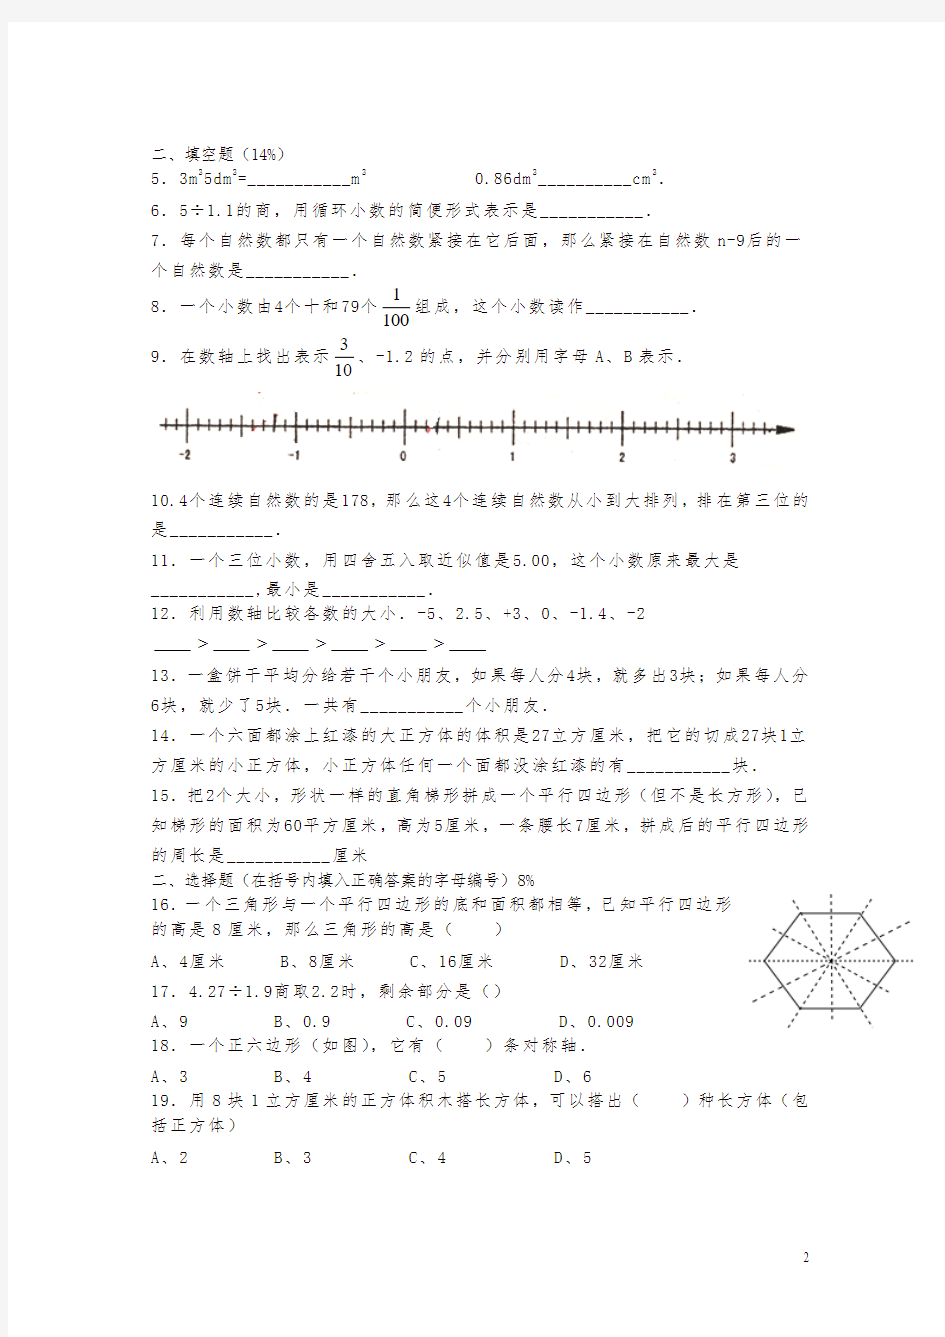 上海市五年级数学综合试卷一(小升初毕业考)-最新